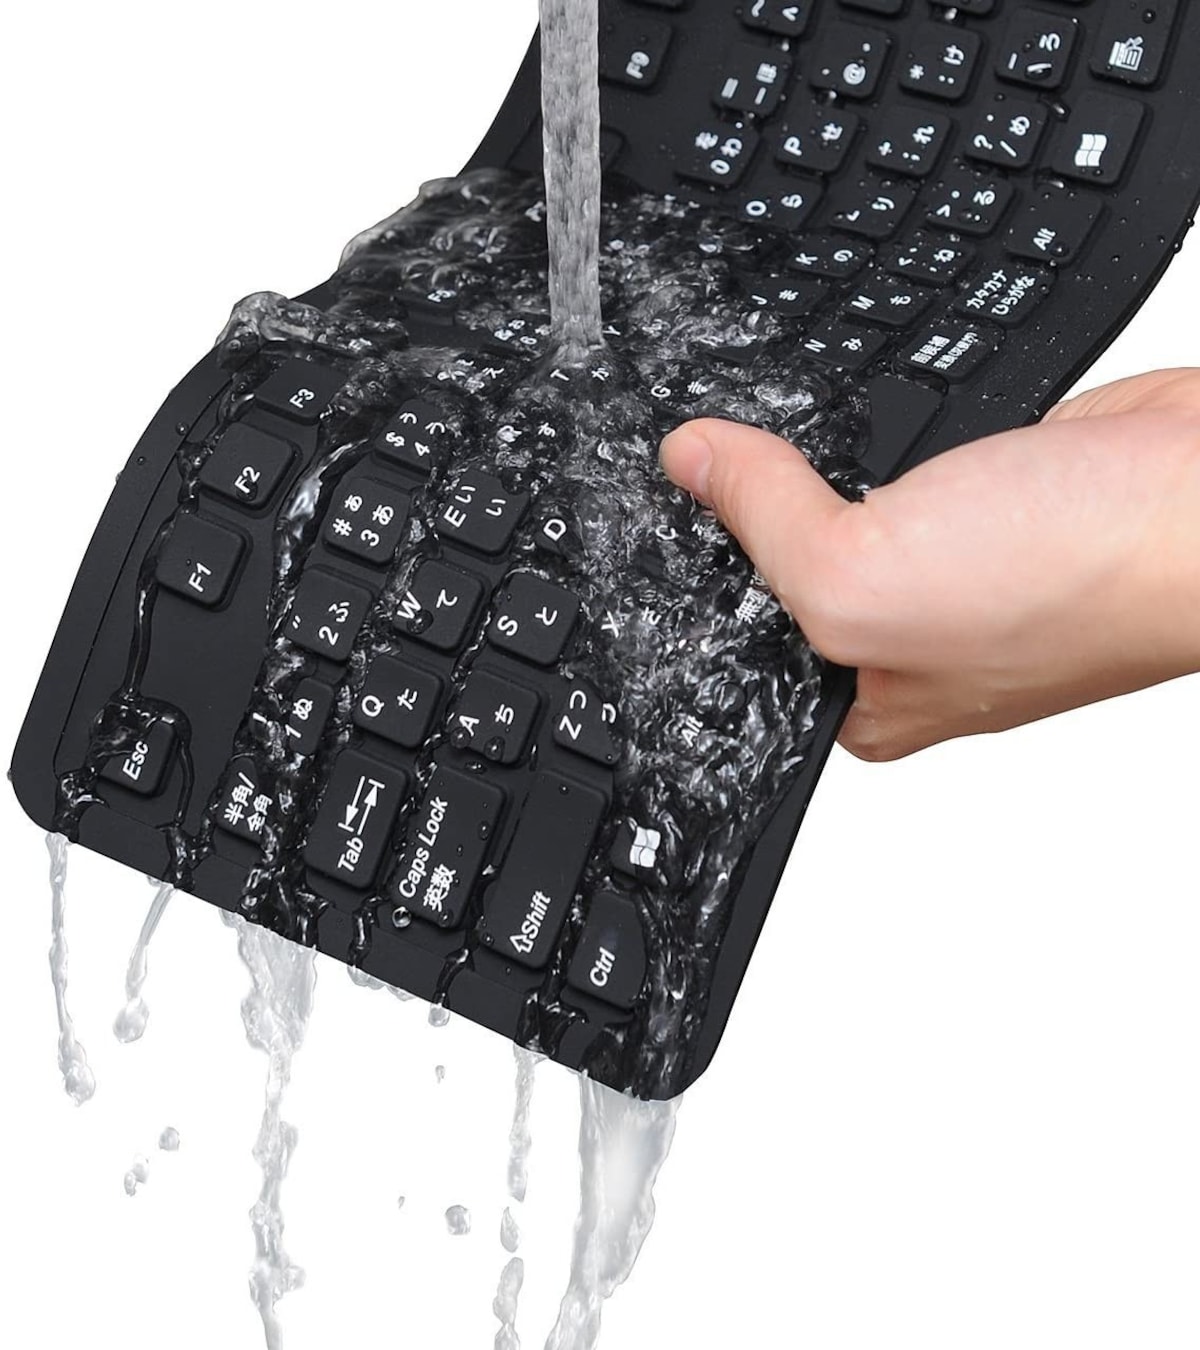  洗えるシリコンキーボード 防水画像3 